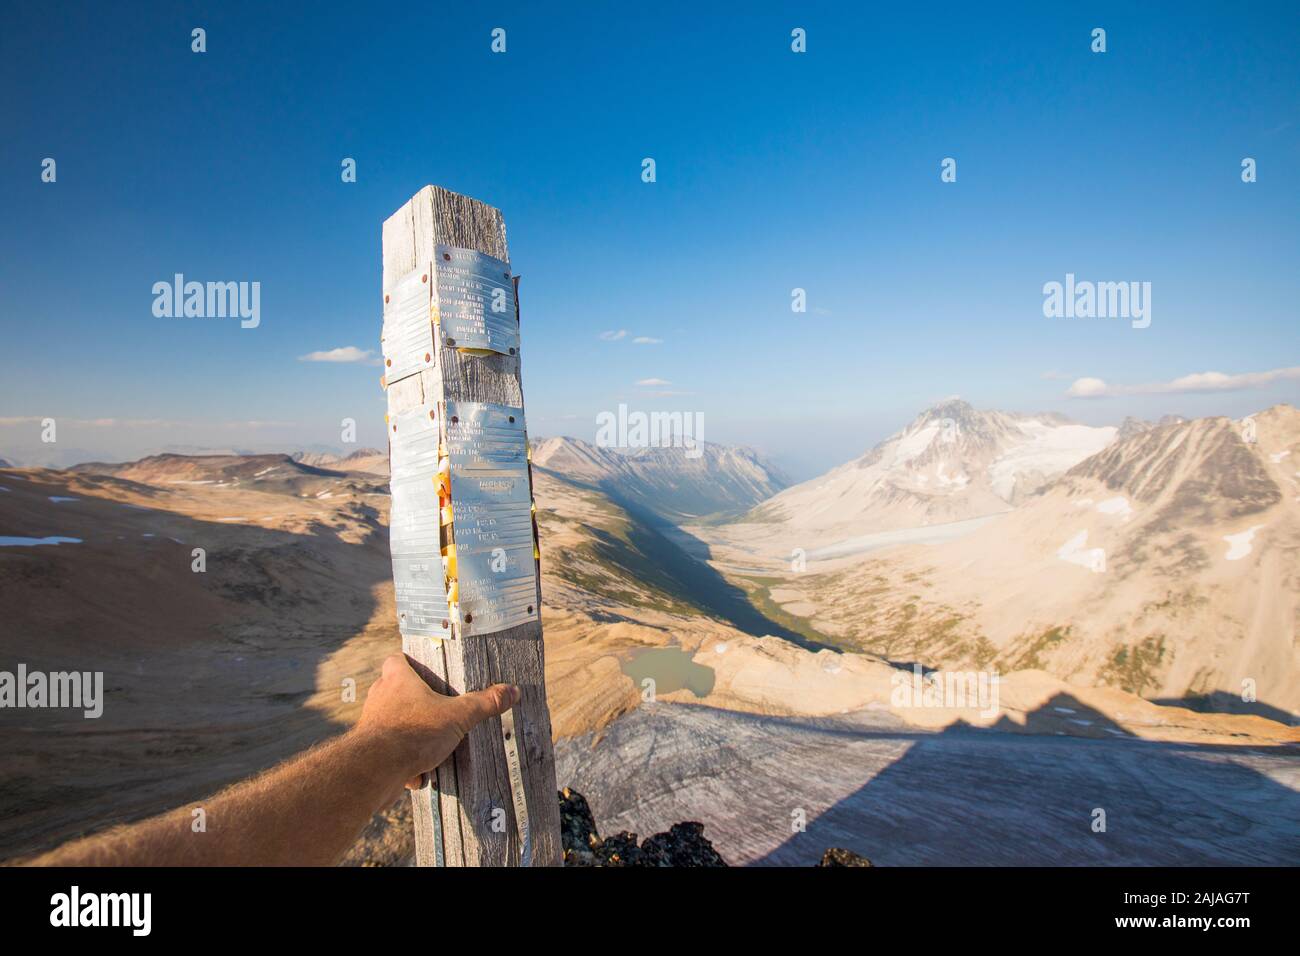 Man tiene un cargo de reclamación minera por encima de Athelney Pass, Columbia Británica Foto de stock